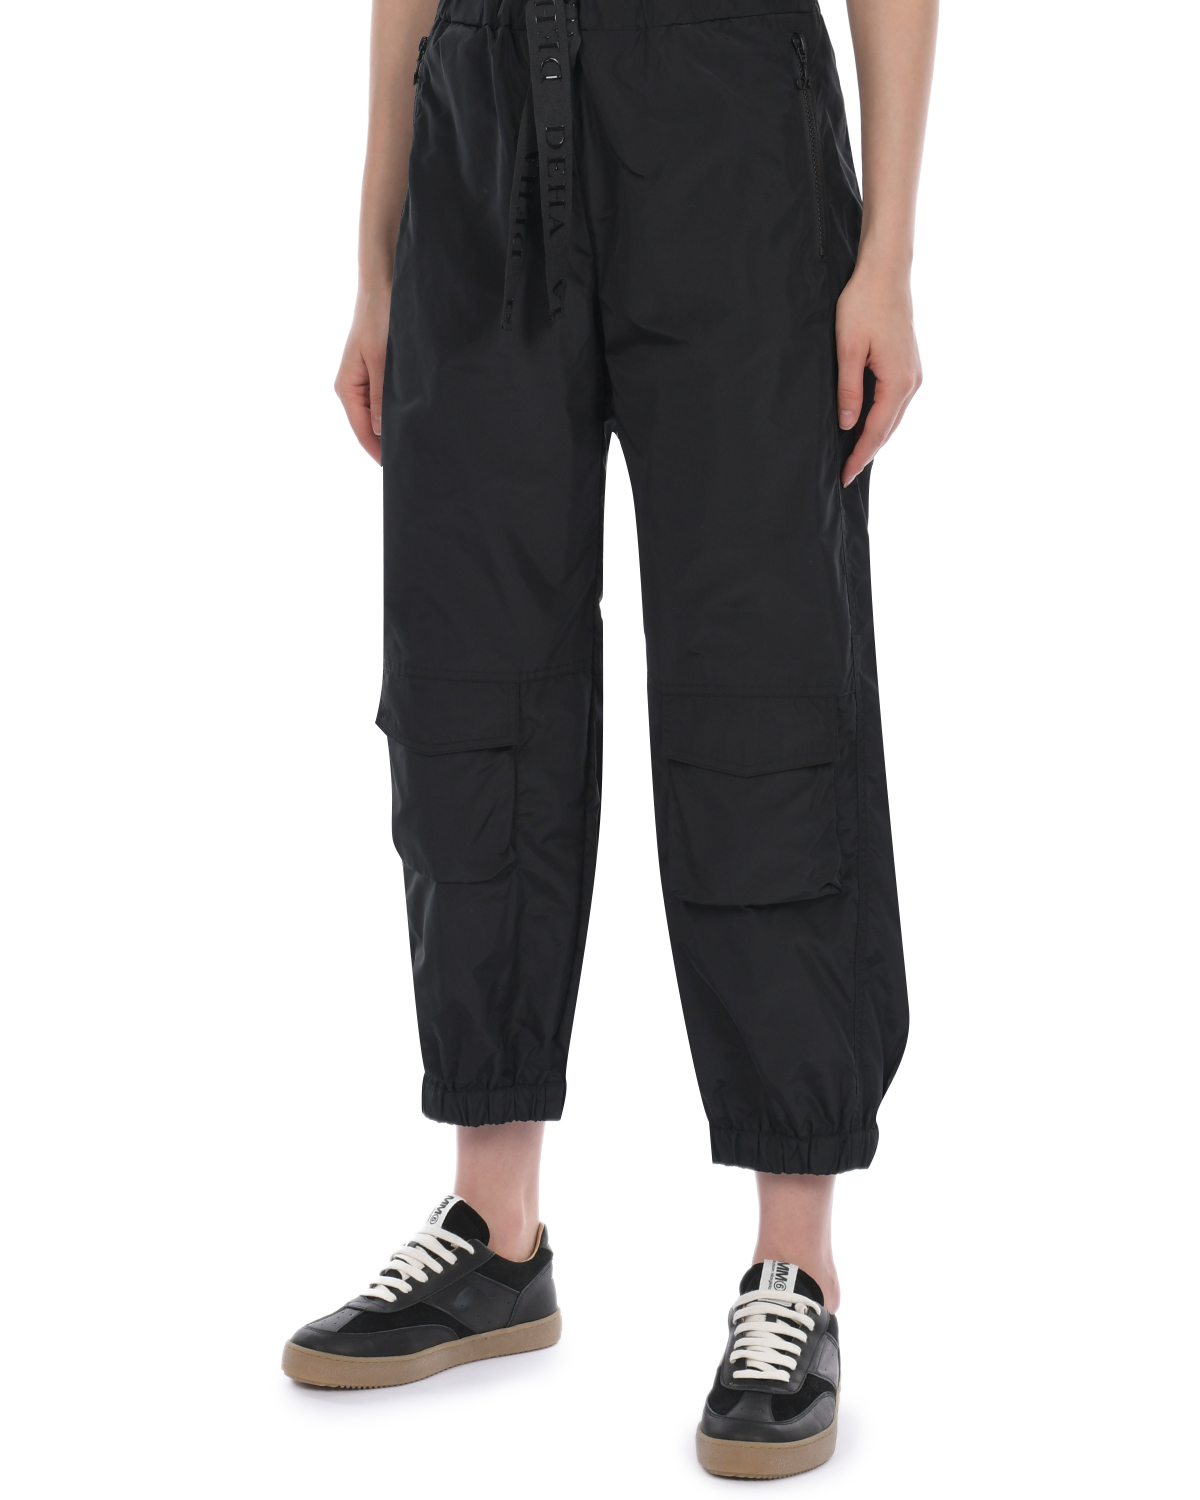 Черные джоггеры с накладными карманами Deha, размер 38, цвет черный - фото 6